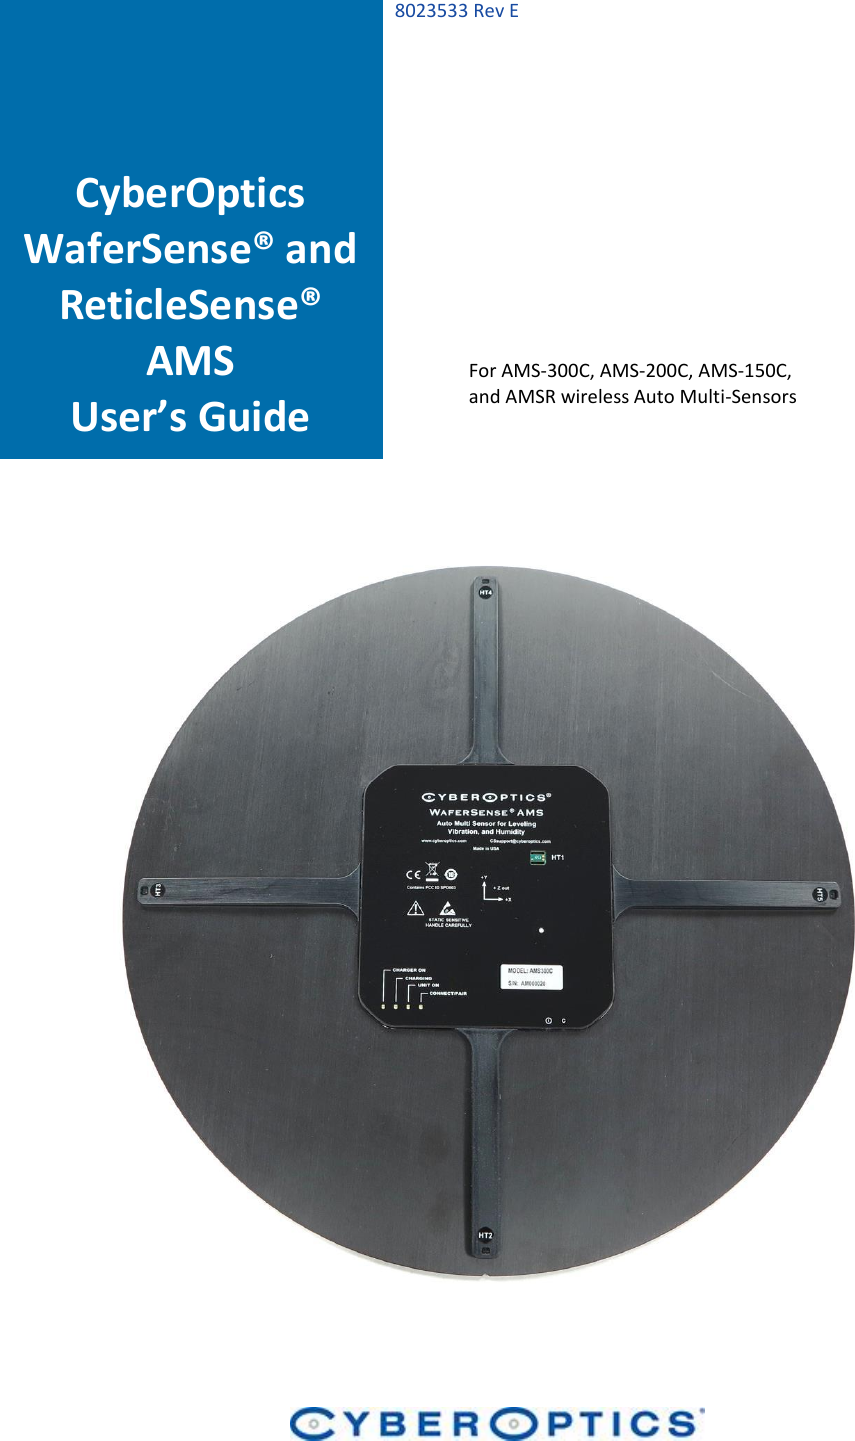   8023533 Rev E                                                         CyberOptics WaferSense® and ReticleSense® AMS User’s Guide For AMS-300C, AMS-200C, AMS-150C, and AMSR wireless Auto Multi-Sensors 